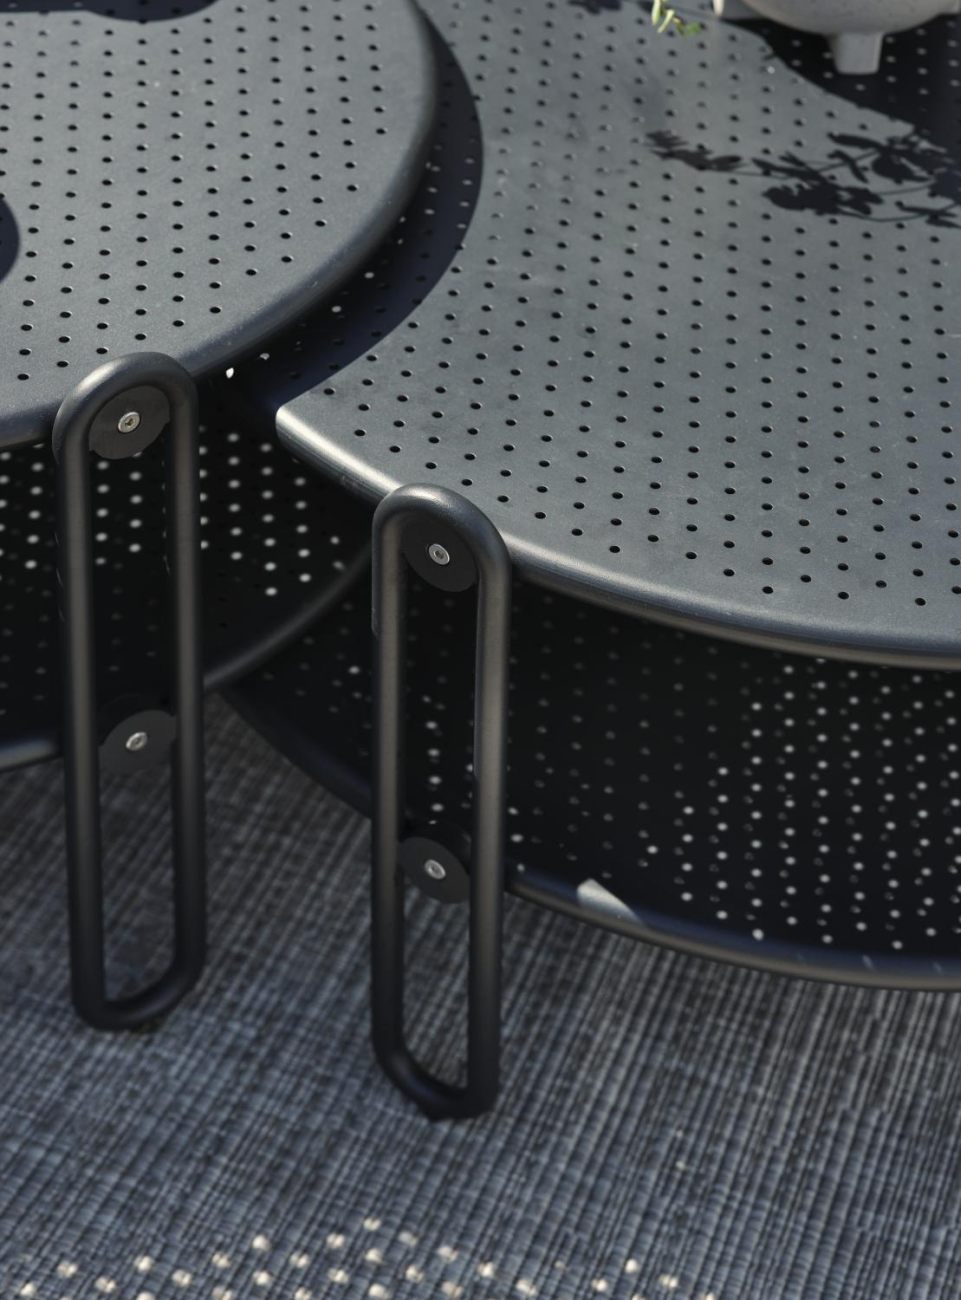 Der Gartencouchtisch Blixt überzeugt mit seinem modernen Design. Gefertigt wurde die Tischplatte aus Metall und besitzt einen schwarzen Farbton. Das Gestell ist auch aus Metall und hat eine schwarze Farbe. Der Tisch besitzt eine Länger von 65 cm.